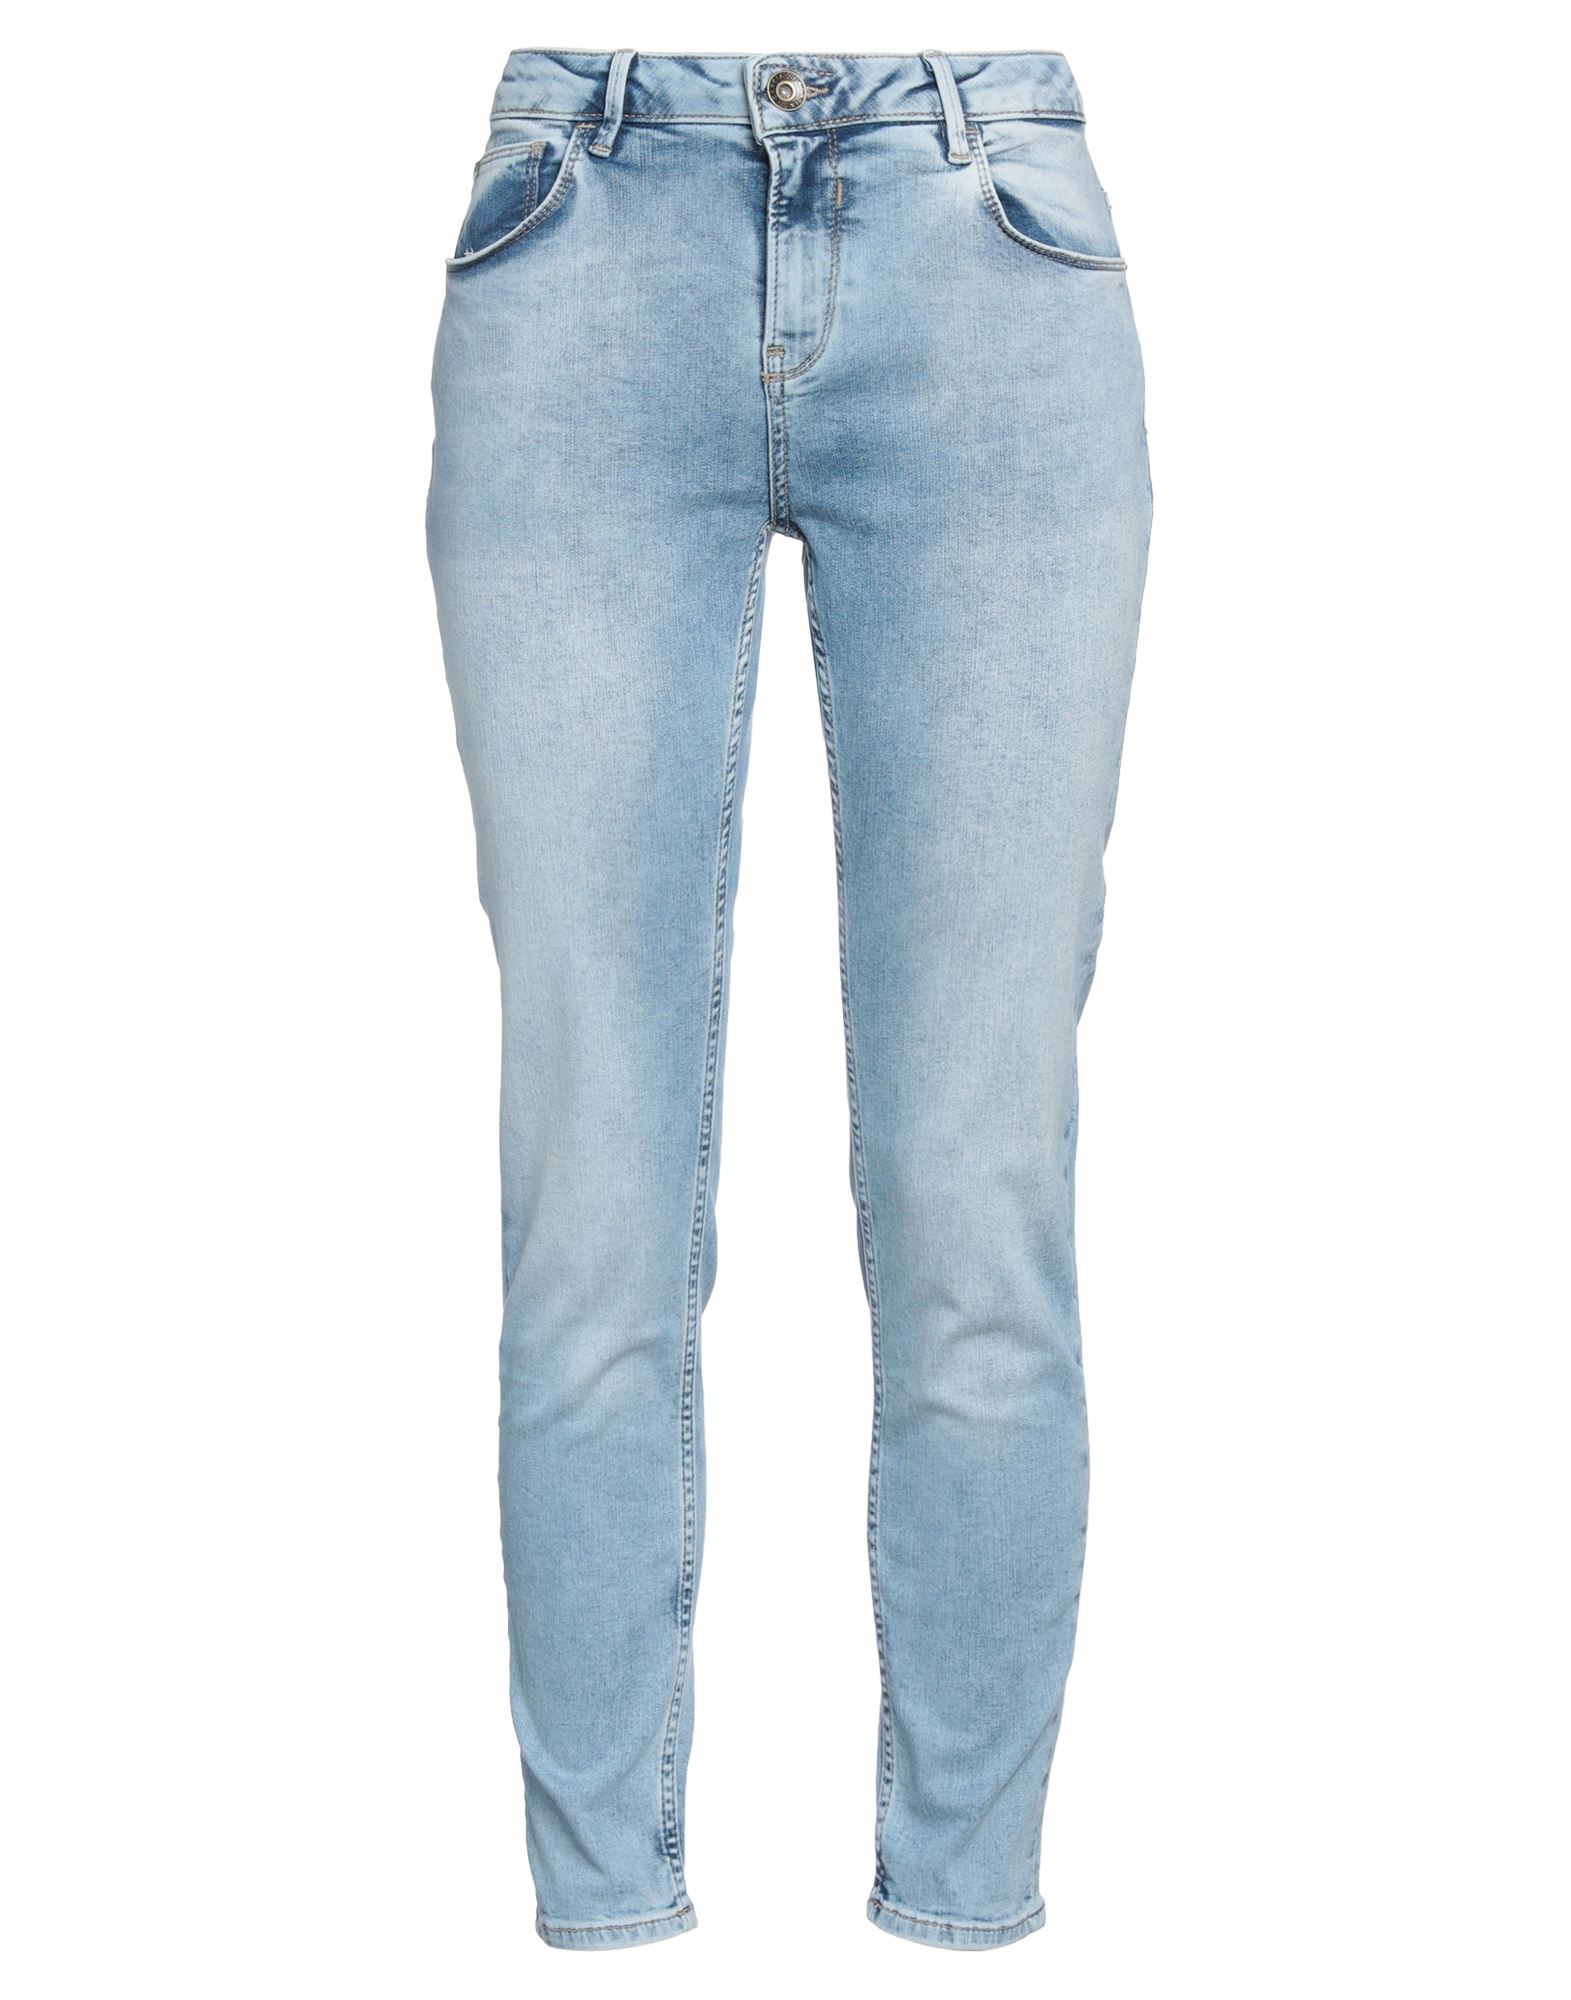 Garcia Woman Jeans Blue Size 28w-28l Cotton, Polyacrylic, Elastane